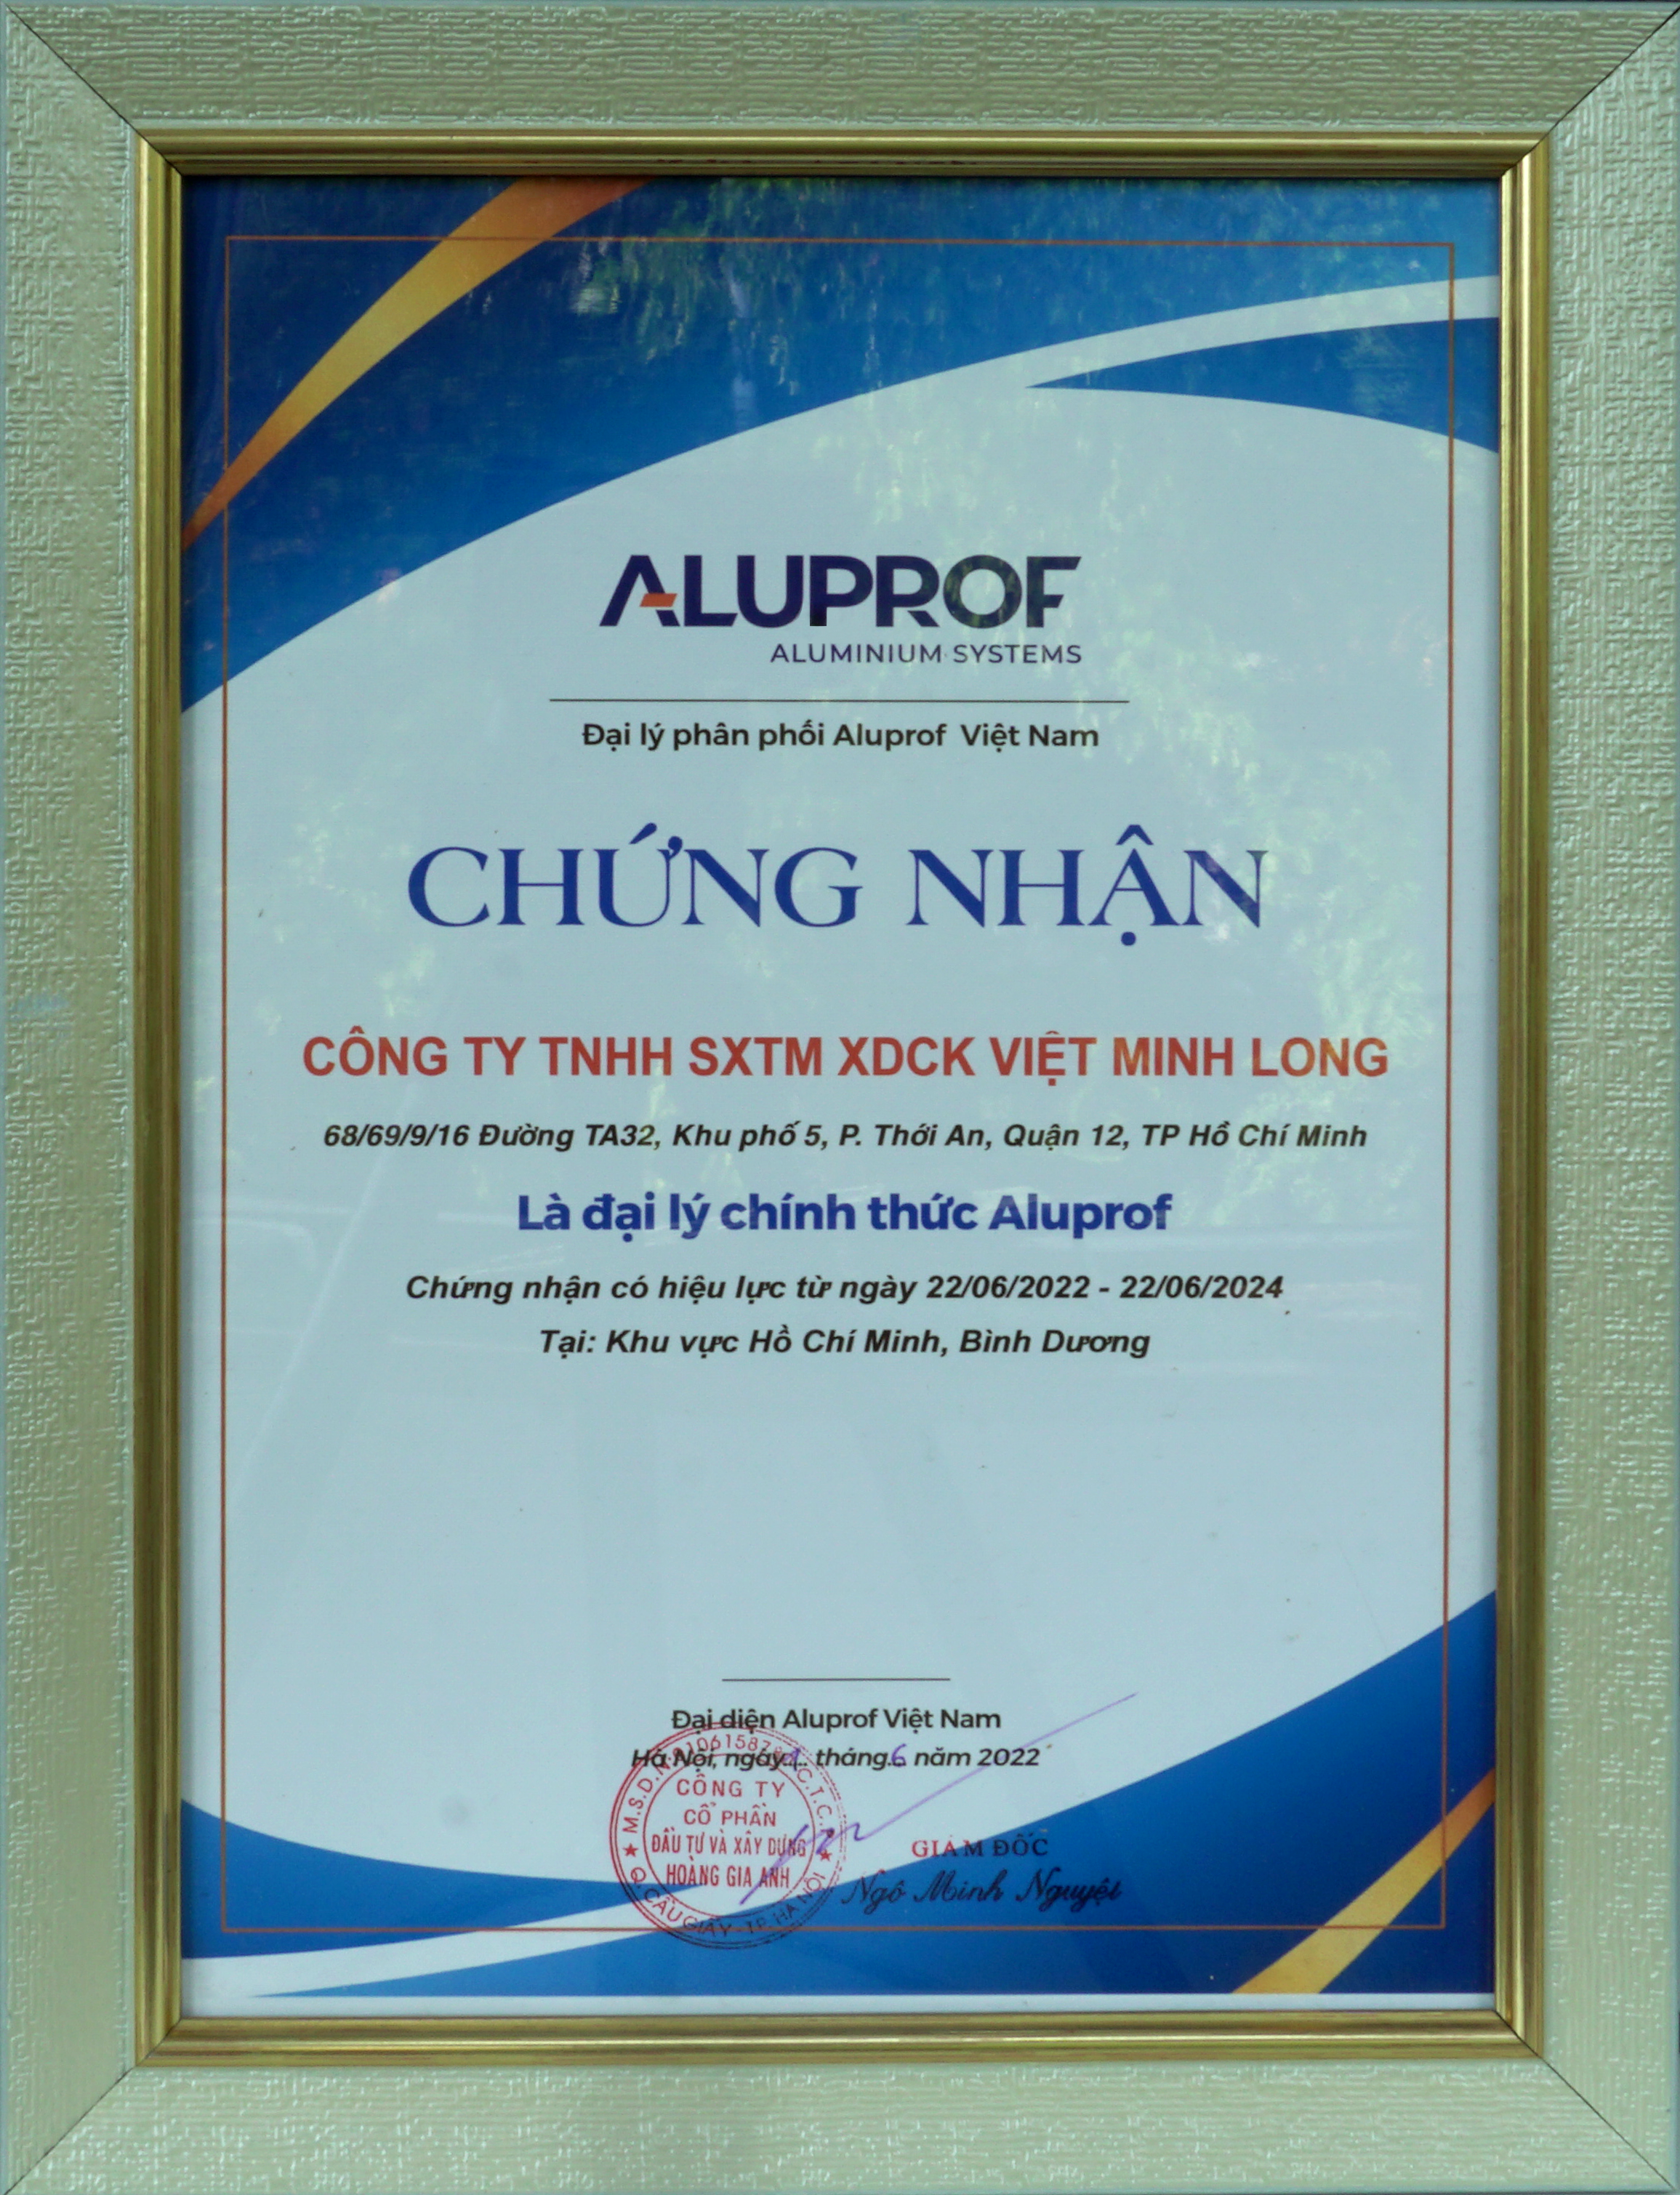 Giấy chứng nhận Cửa nhôm Việt Minh đủ điều kiện gia công và đủ tiêu chuẩn làm đại lý ủy quyền cho các thương hiệu